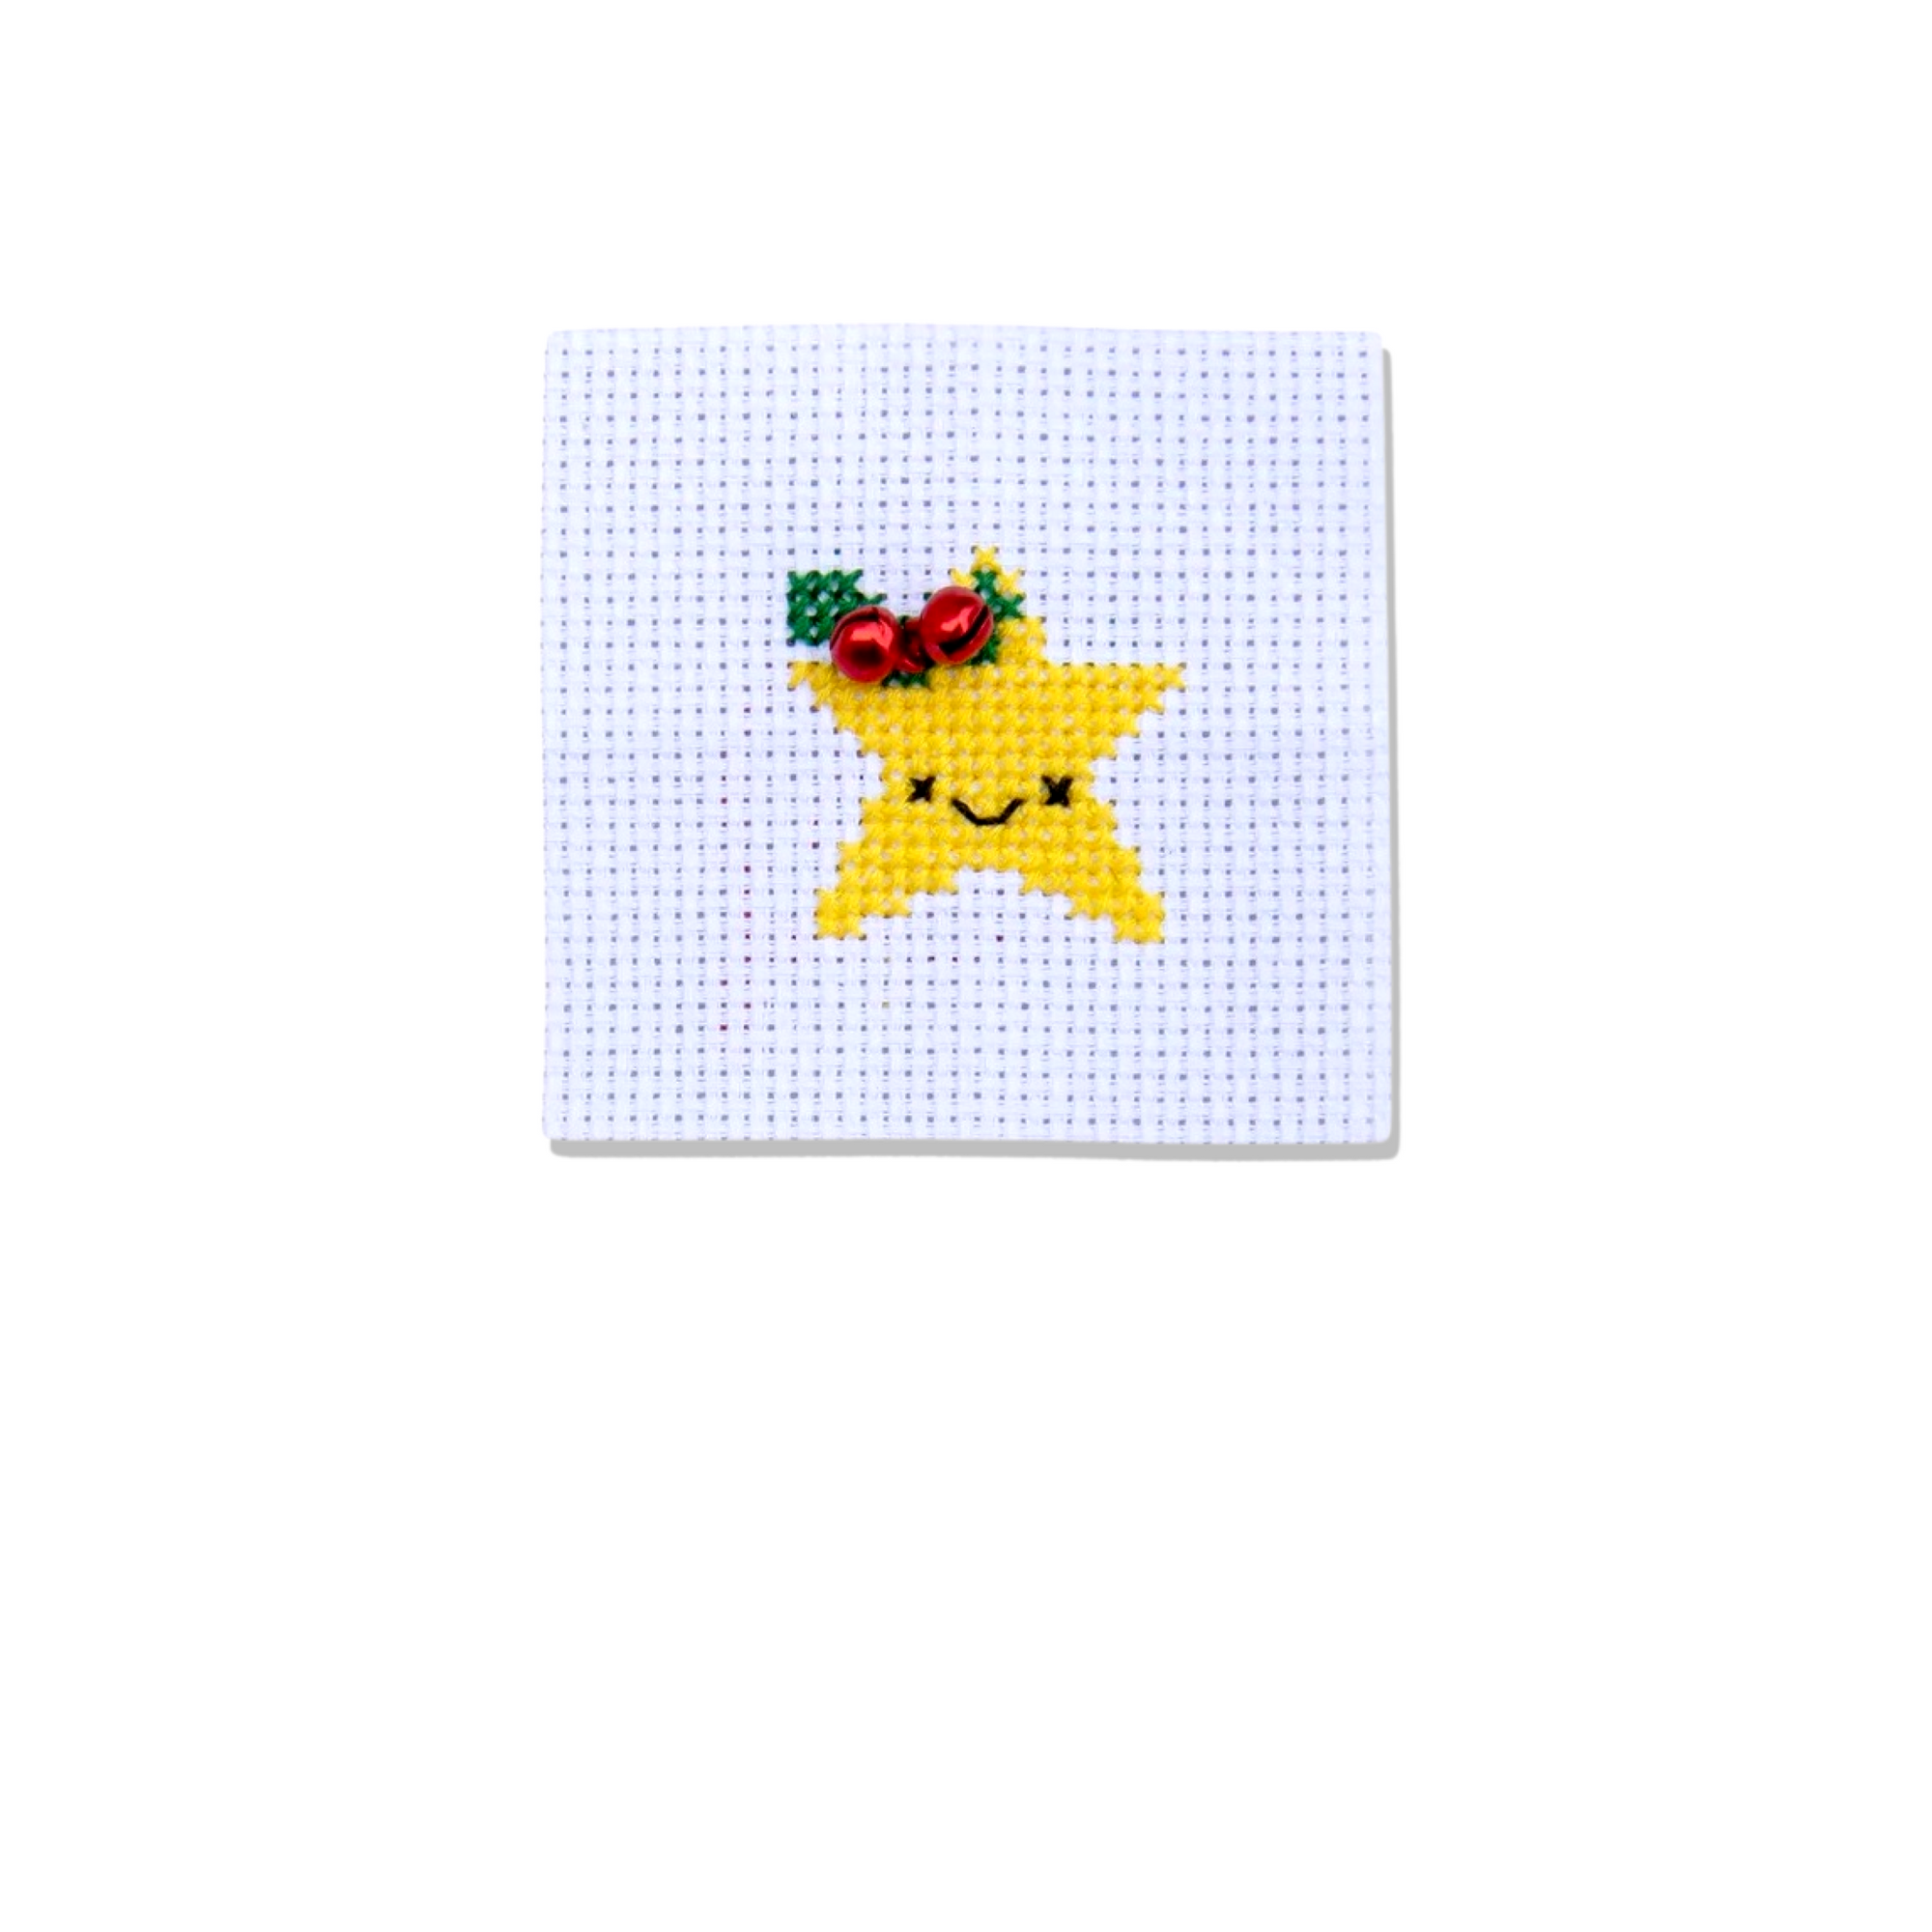 Mini Matchbox Christmas Cross Stitch Kits